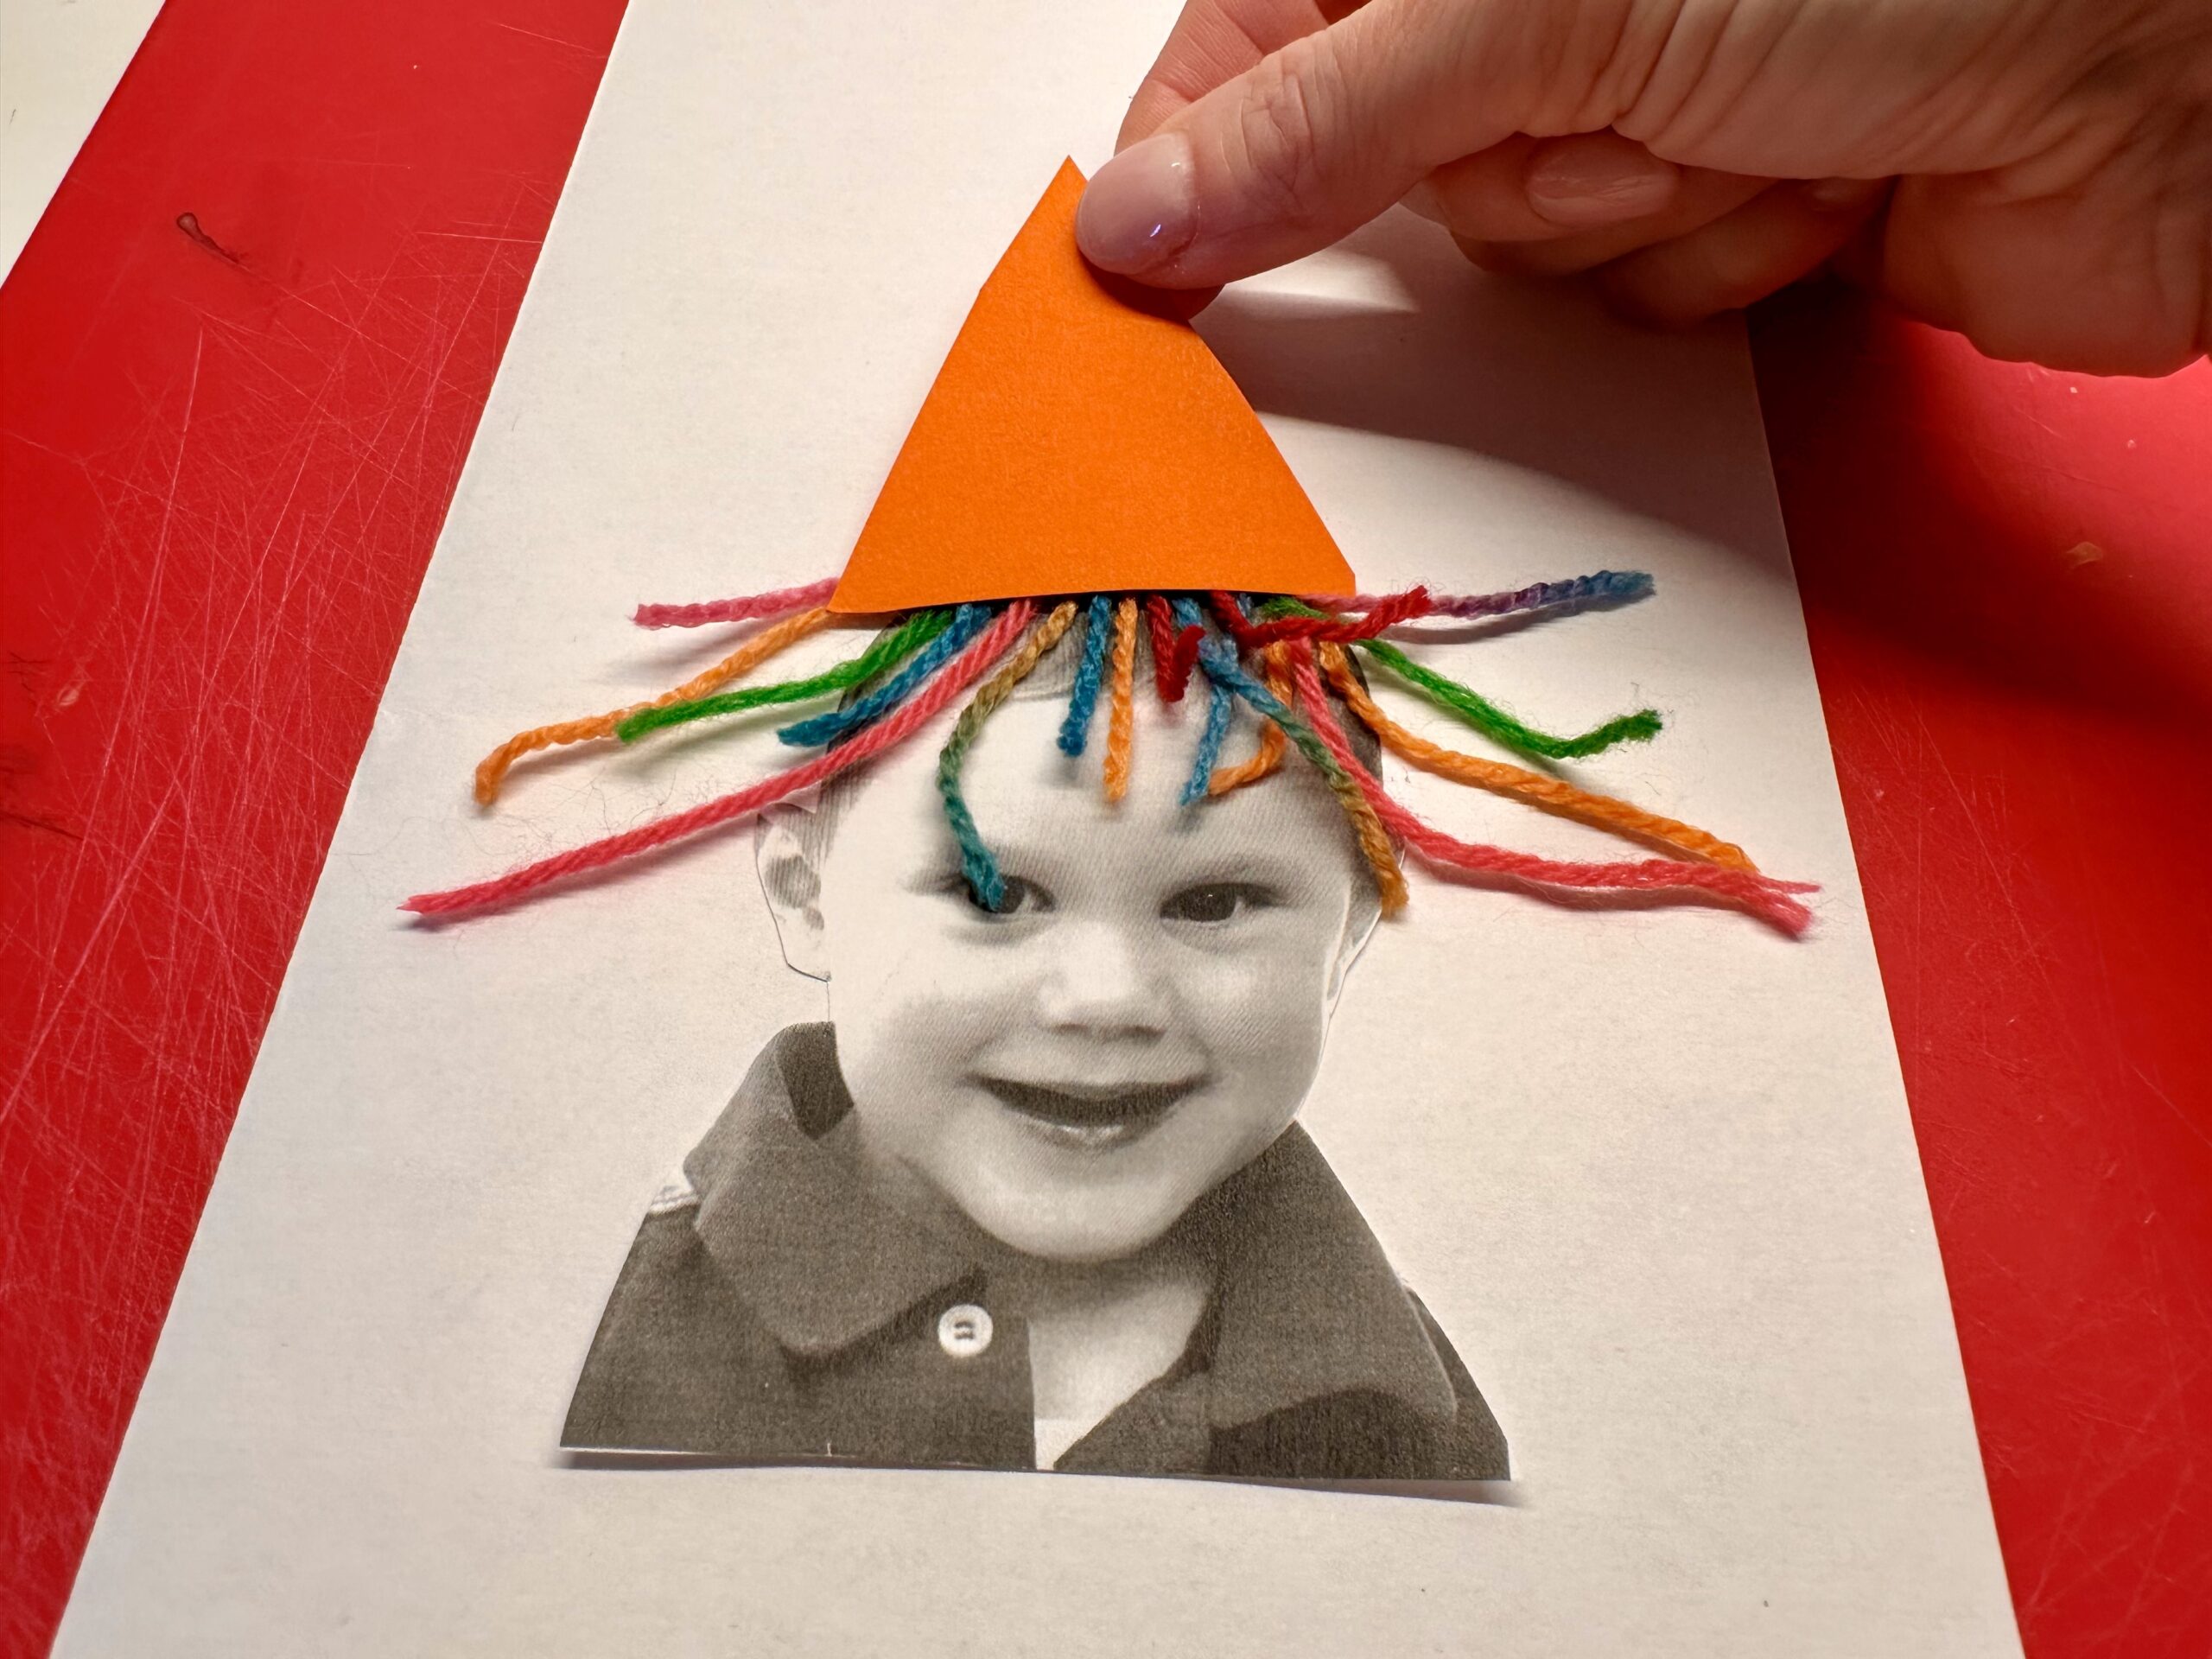 Bild zum Schritt 11 für das Bastel- und DIY-Abenteuer für Kinder: 'Schneidet den Hut aus.'